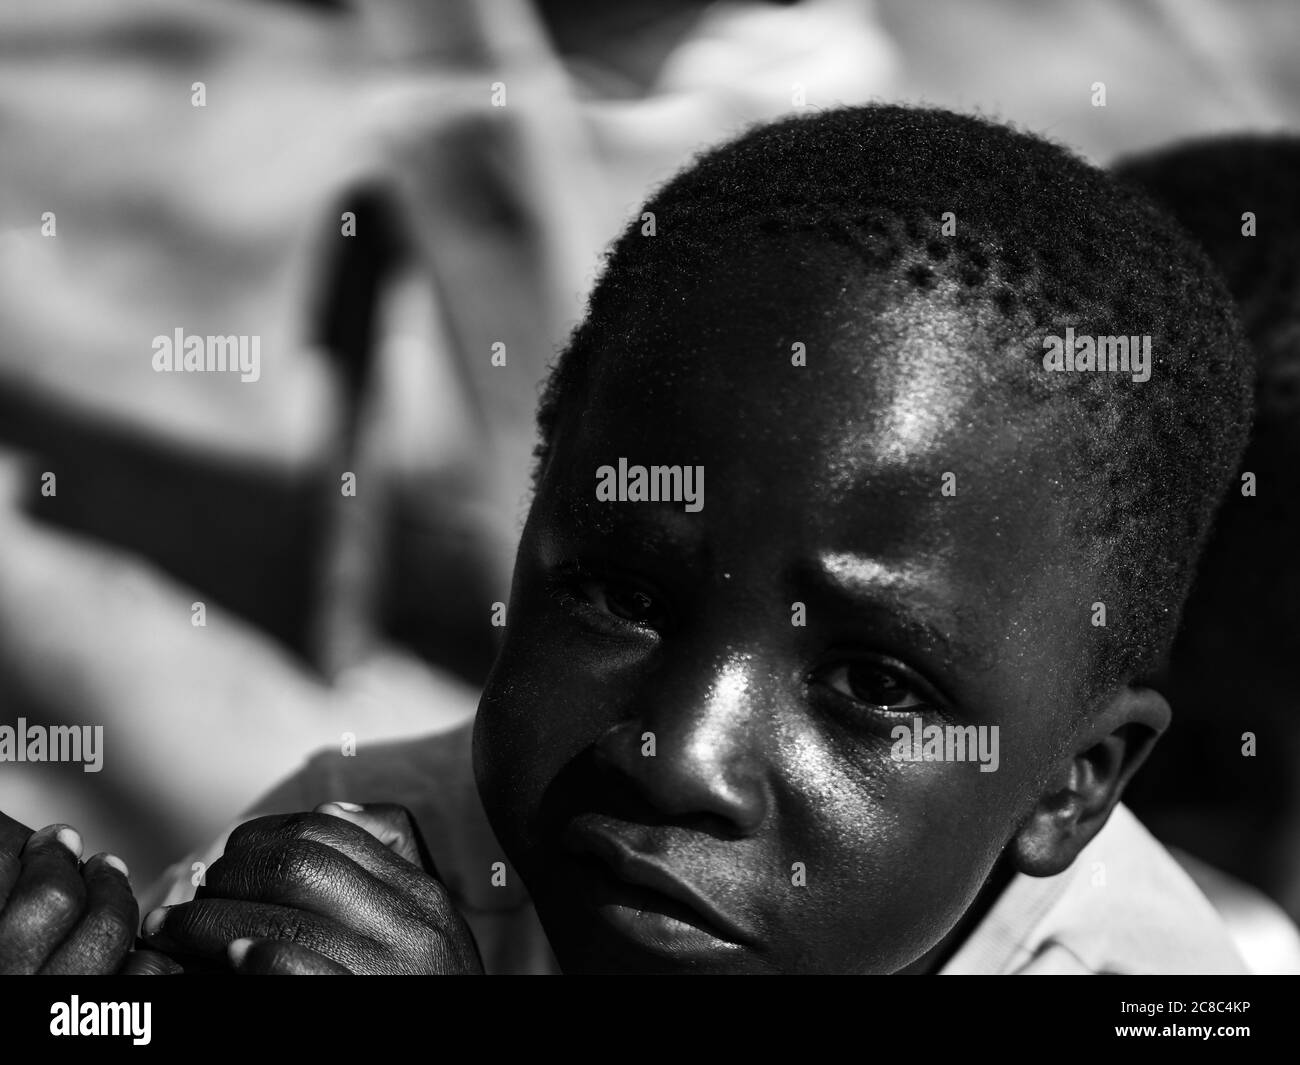 Immagine in bianco e nero di bambino africano, bambini neri da vicino Foto Stock